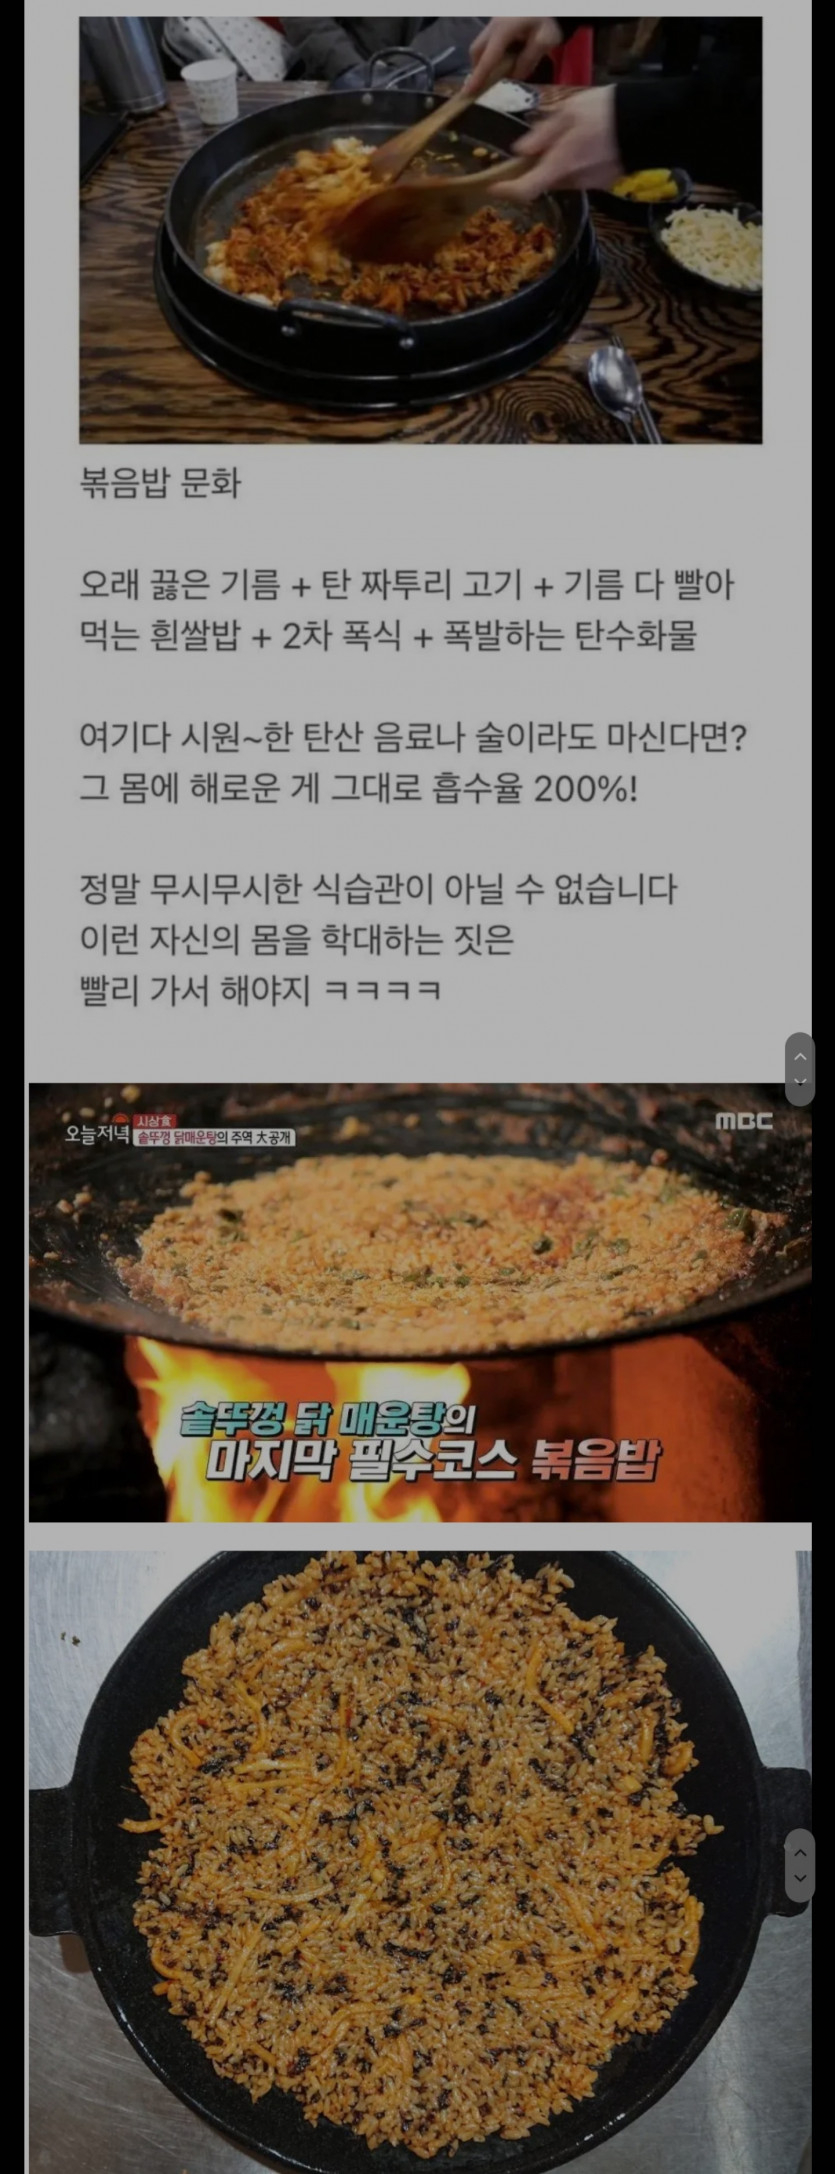 한국 최악의 식습관 중 하나ㅜ(0)